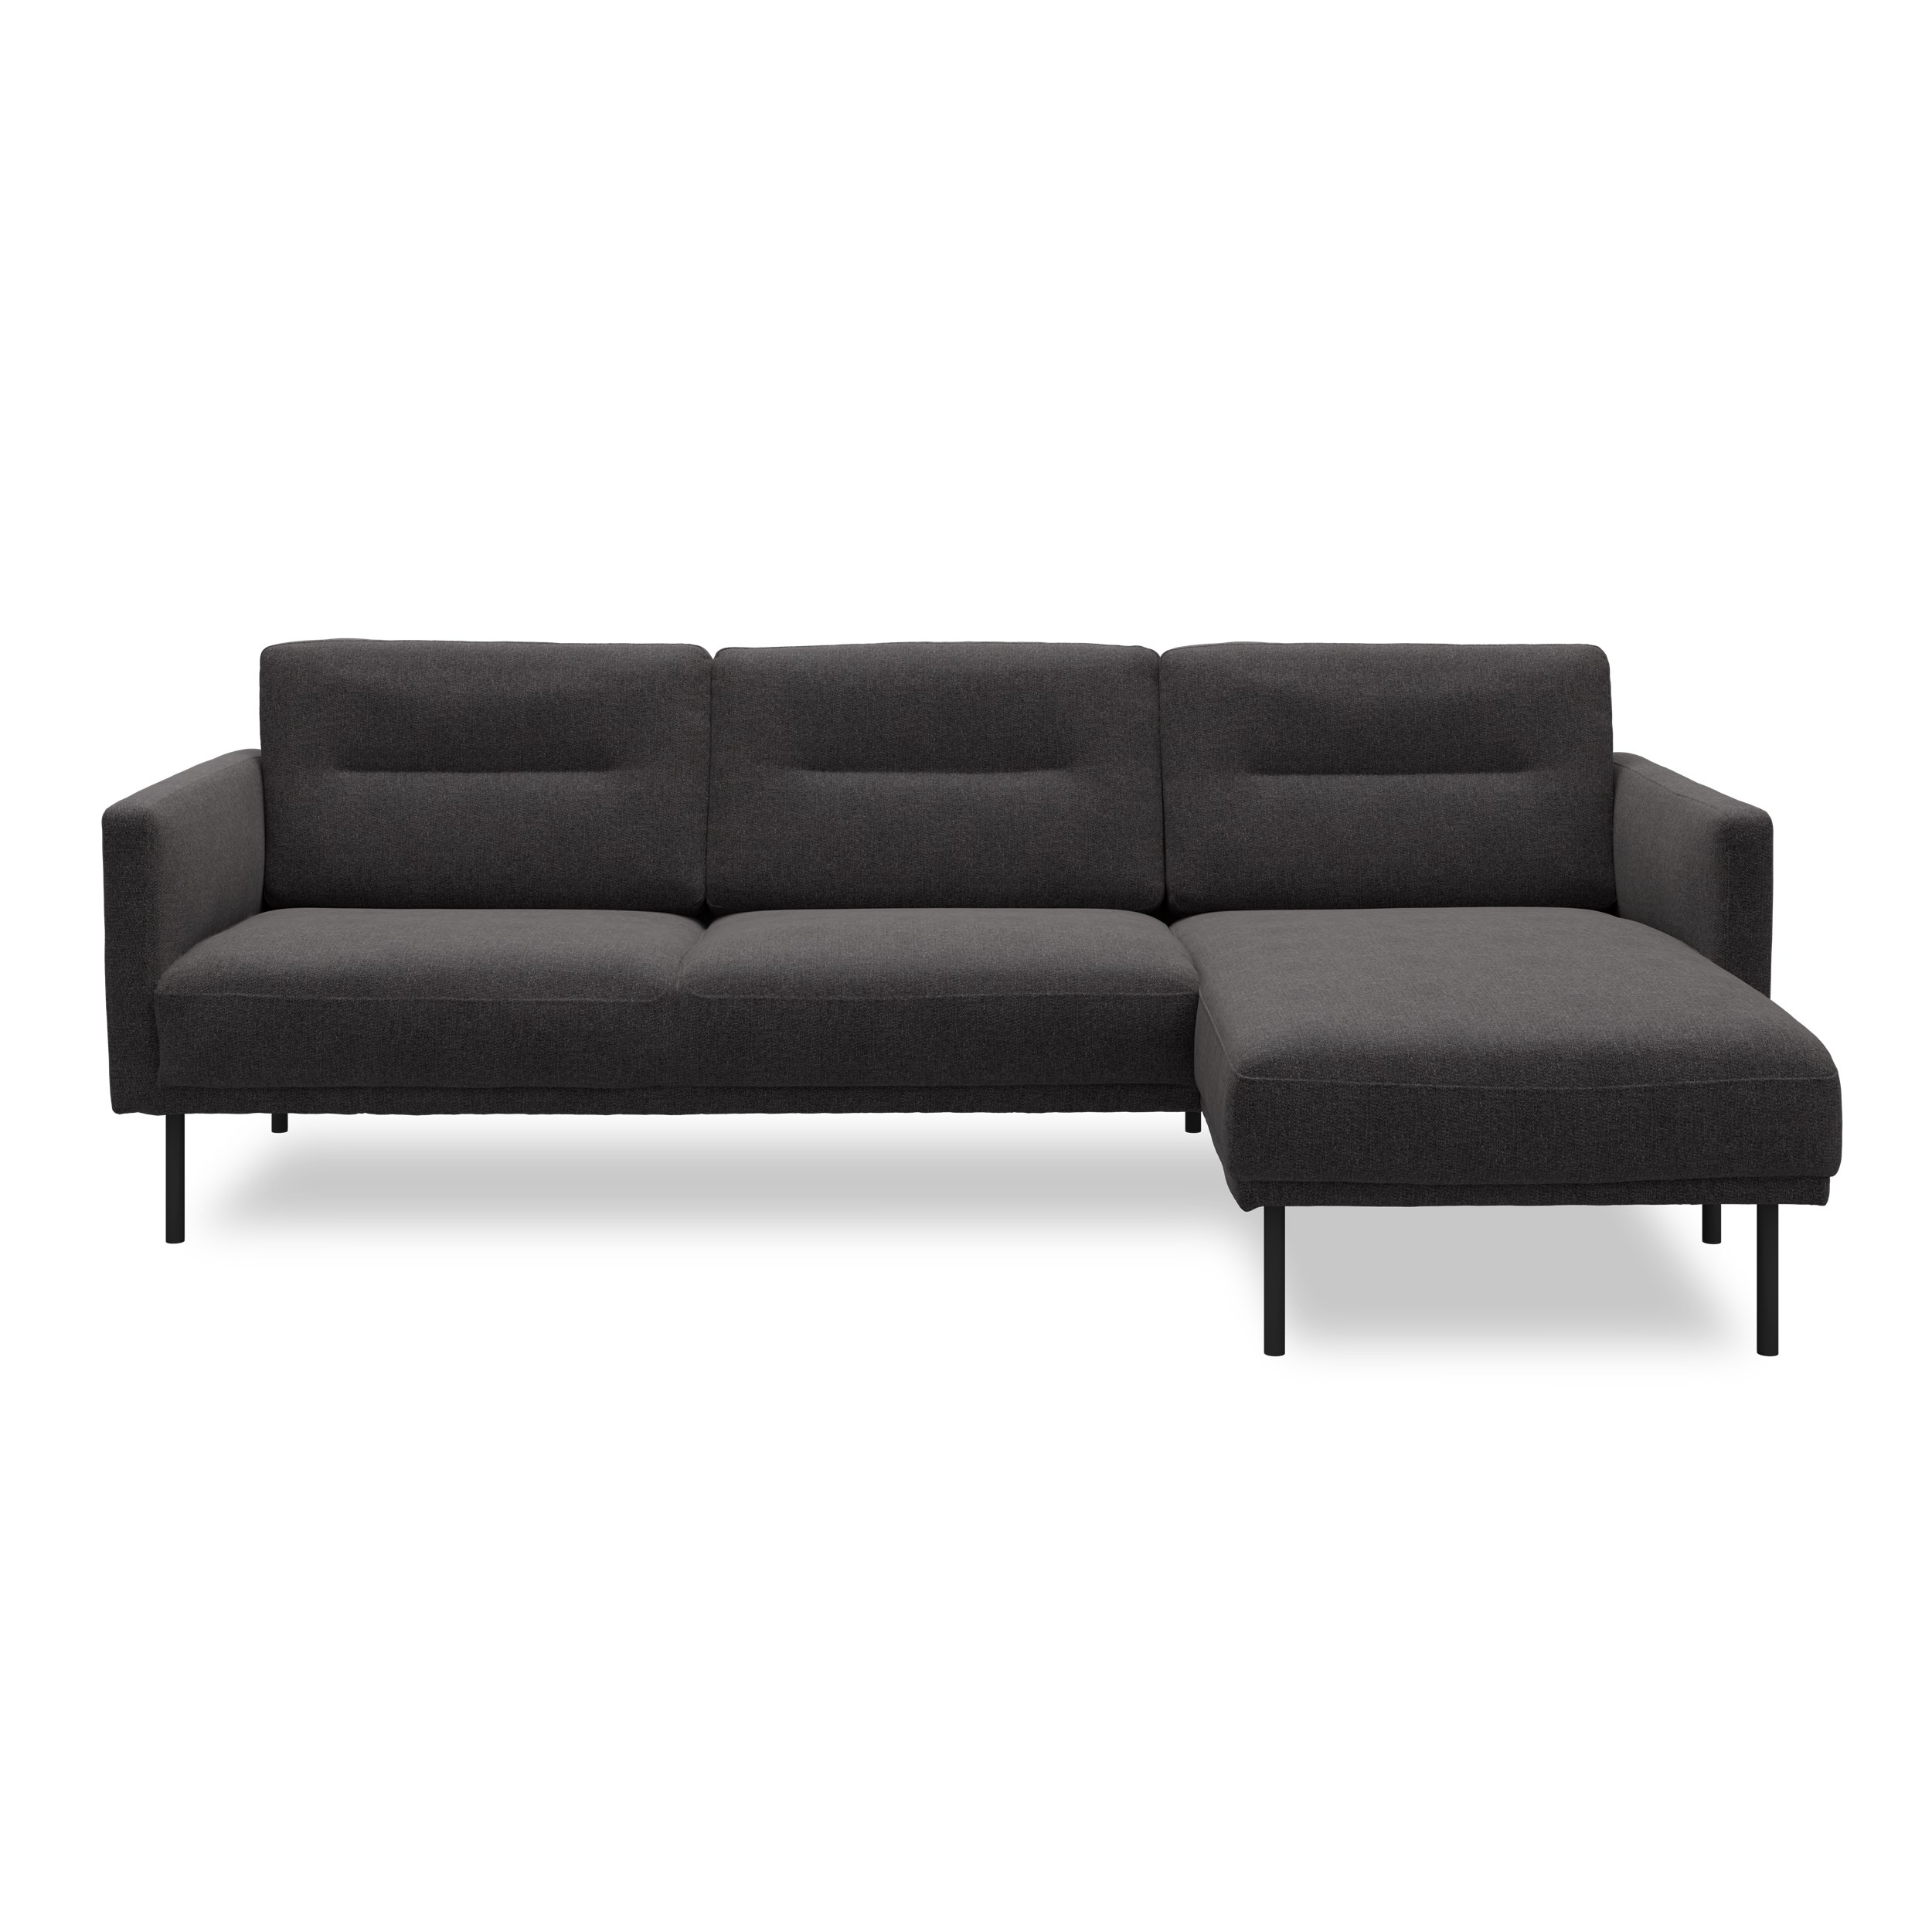 Larvik højrevendt sofa med chaiselong - Hampton 370 Antracite stof og ben i sortlakeret metal